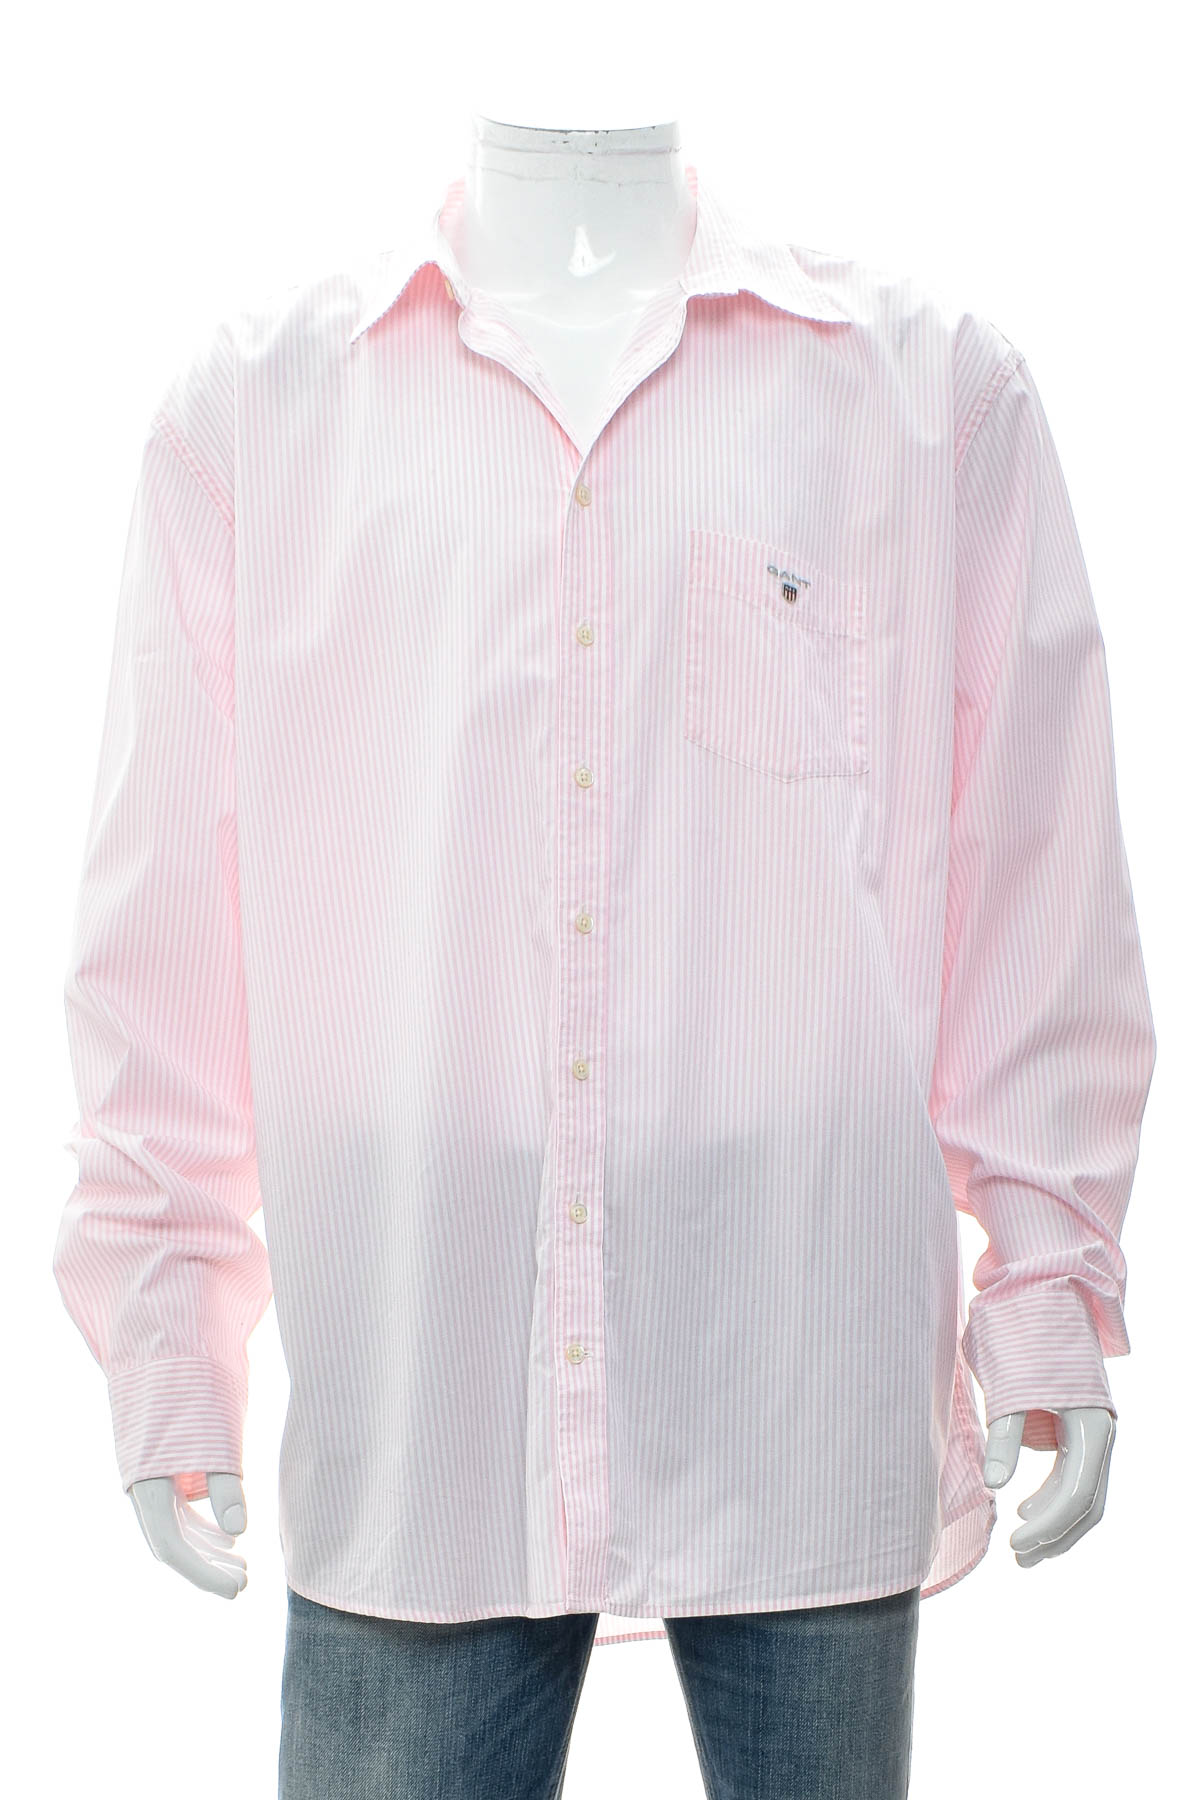 Ανδρικό πουκάμισο - Gant - 0